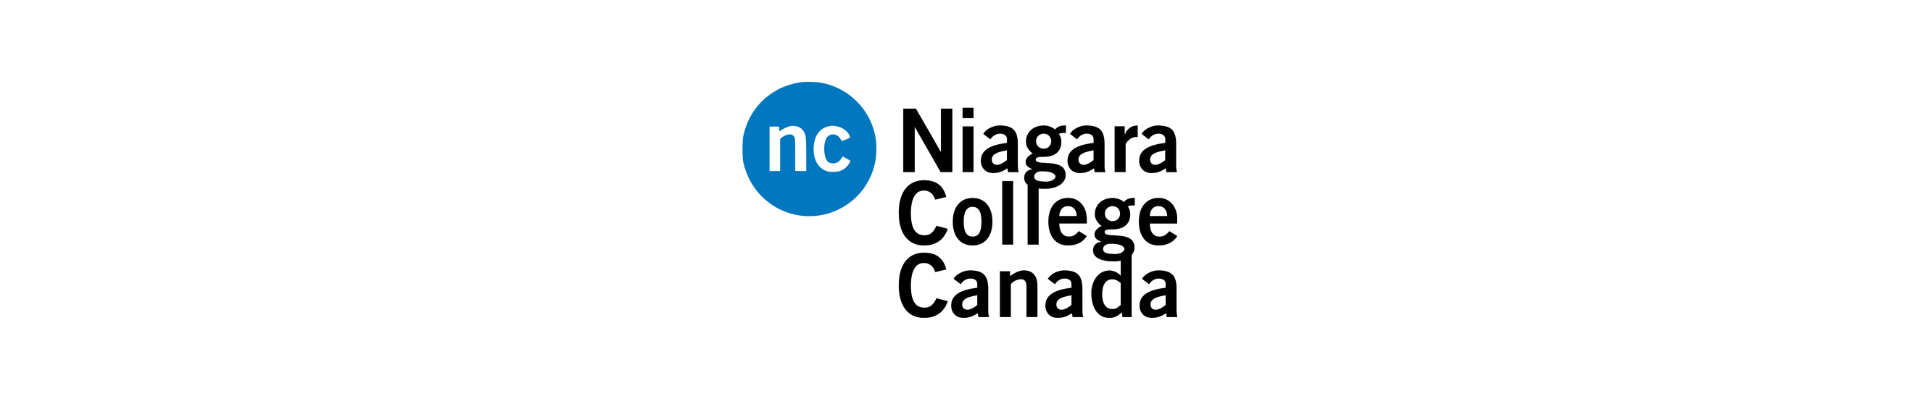 Niagara Collage Canada logo